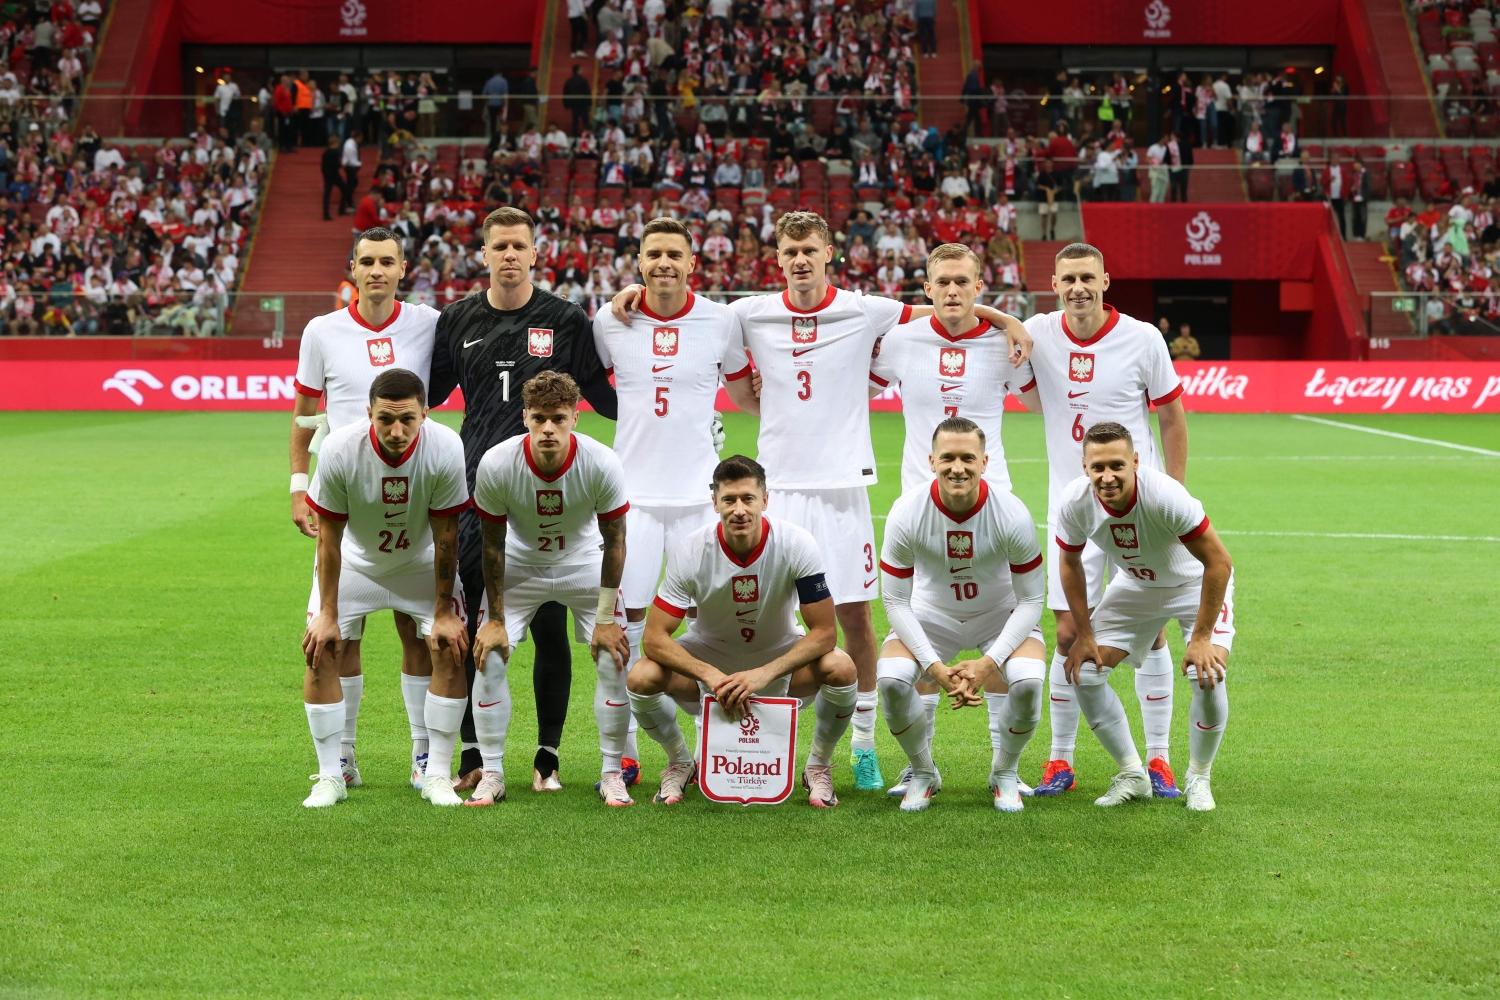 OFICJALNIE: UEFA wyznaczyła sędziego meczu Polska - Austria na EURO 2024